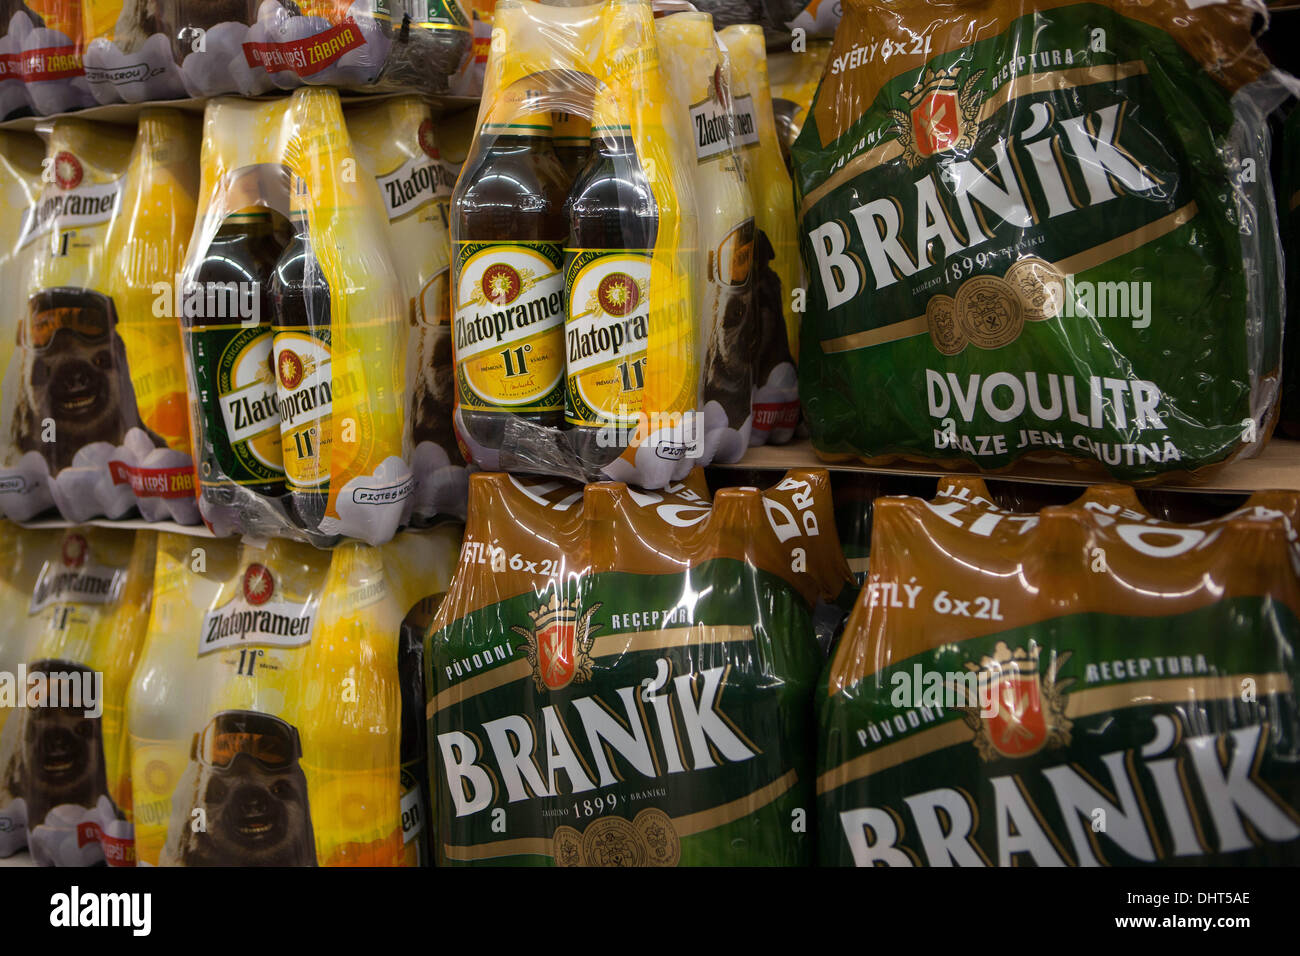 2 l en plastique bouteille de bière marques Zlatopramen et Braník. Dans le supermarché République Tchèque Banque D'Images